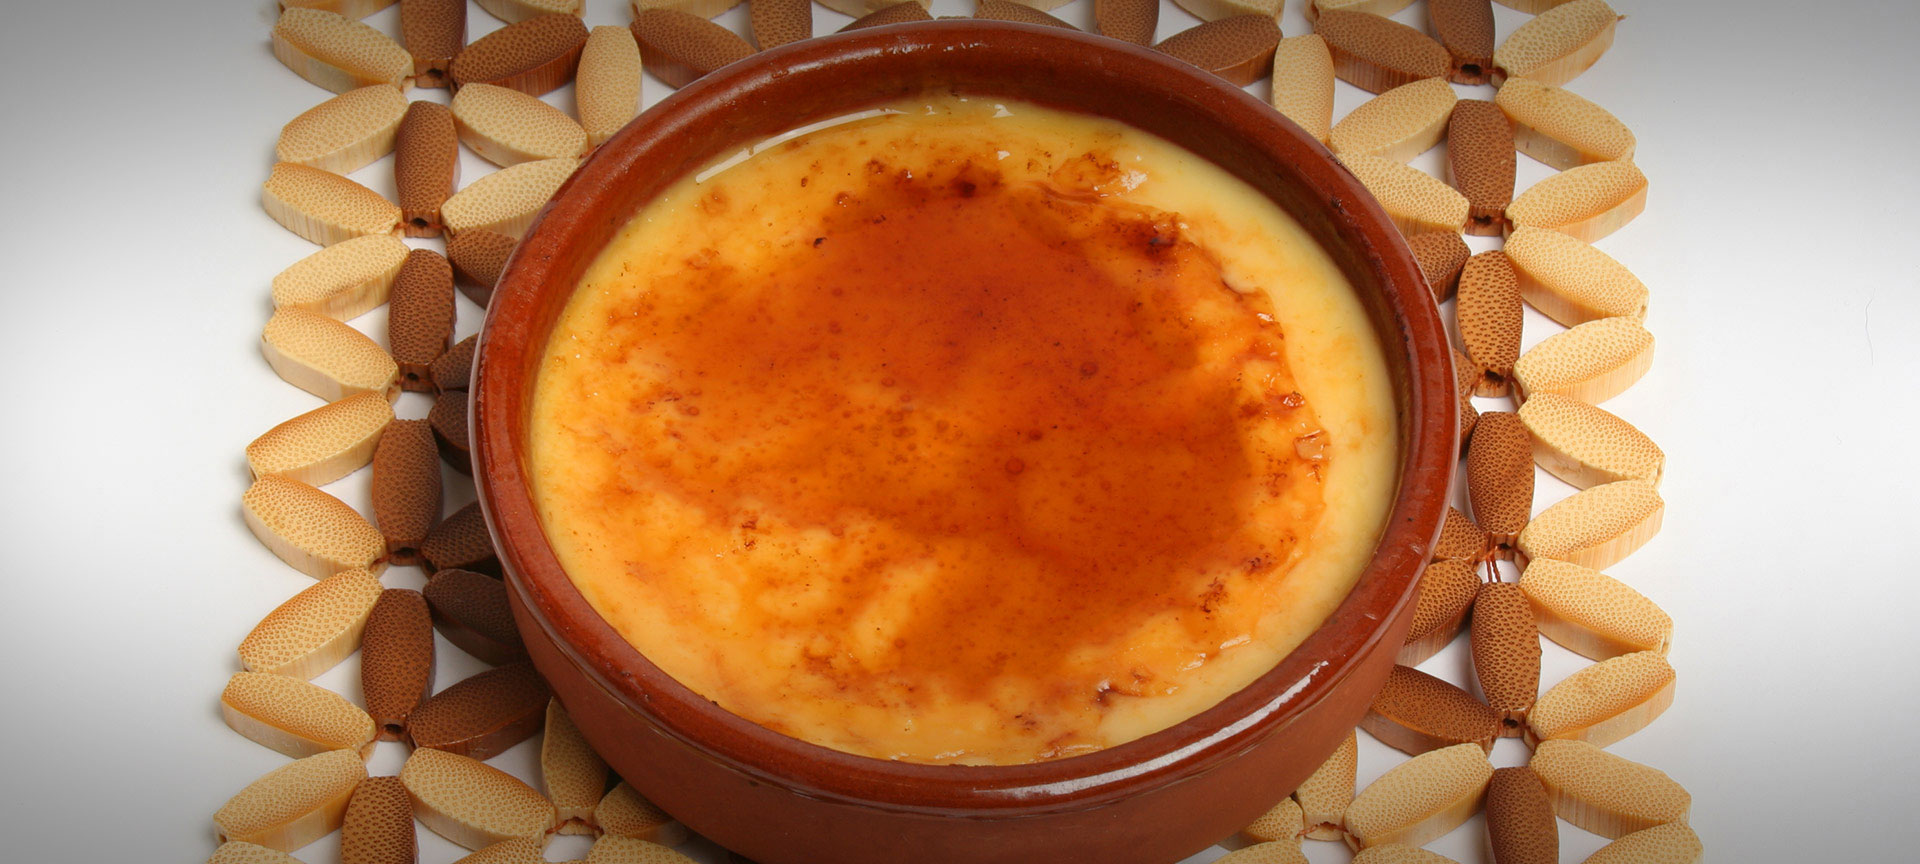 Recipe: Catalan custard. Spanish cuisine